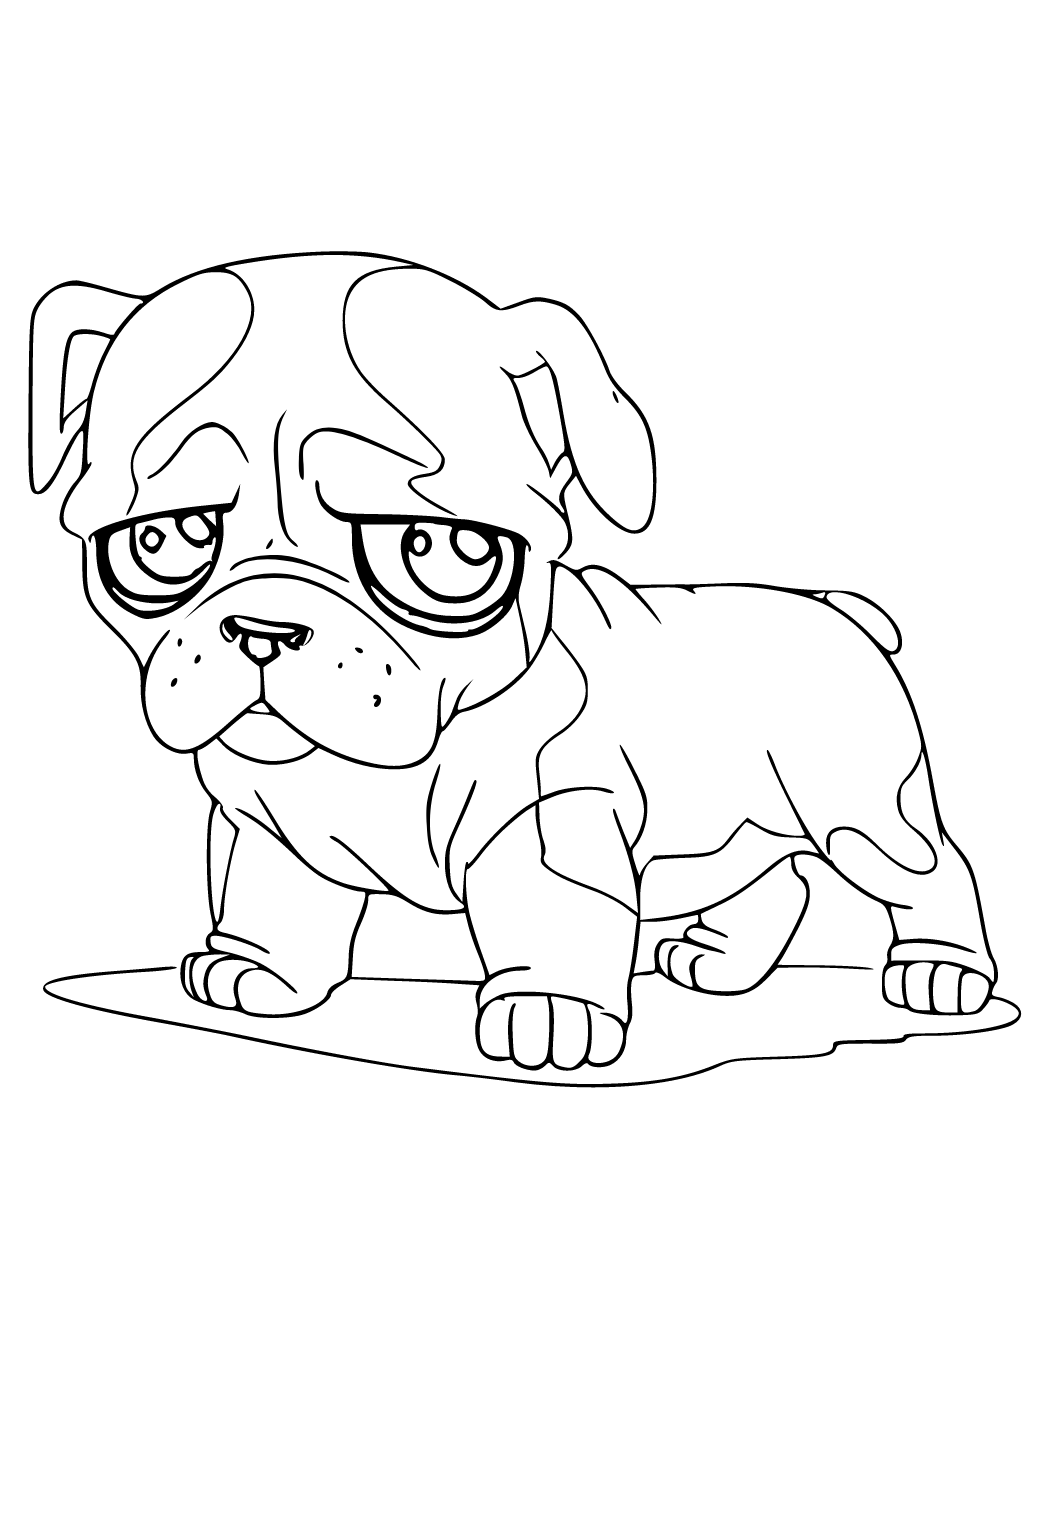 Desenho de cachorro kawaii para colorir